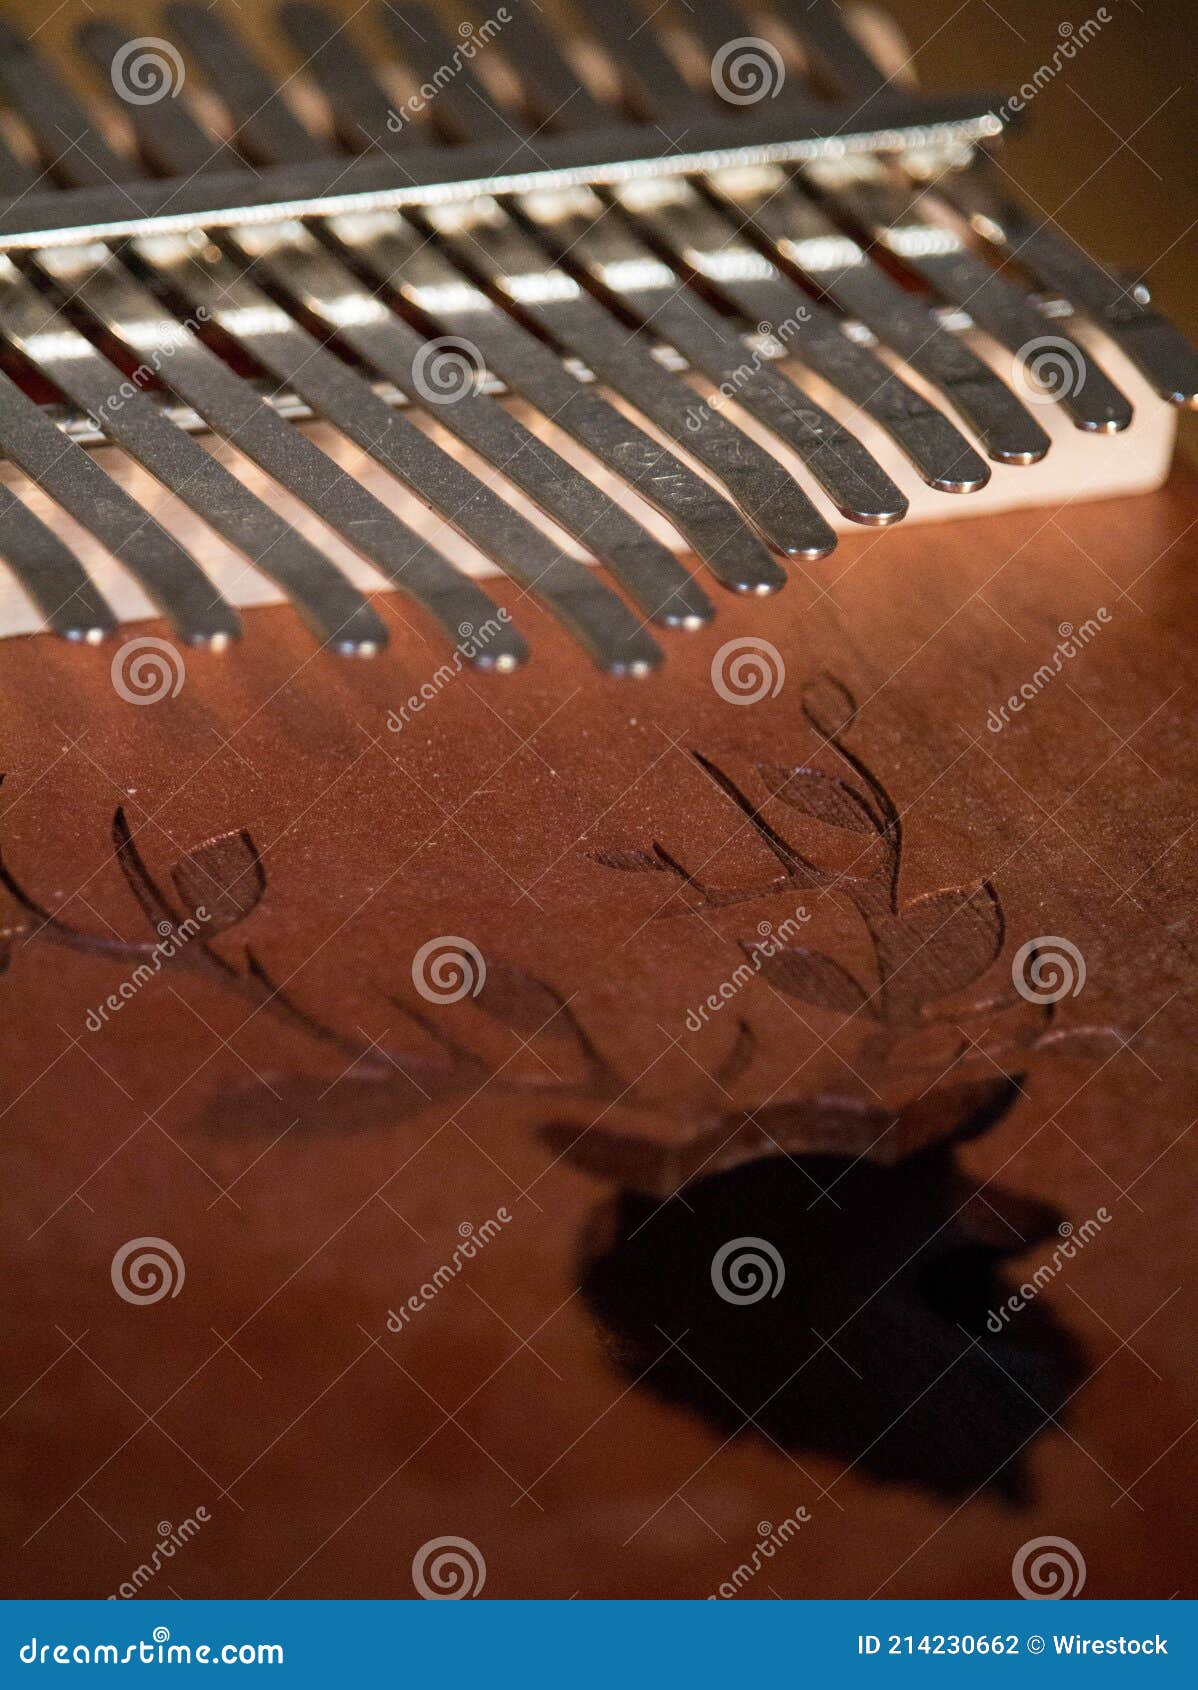 Plan Vertical D'un Piano à Pouce Kalimba Photo stock - Image du